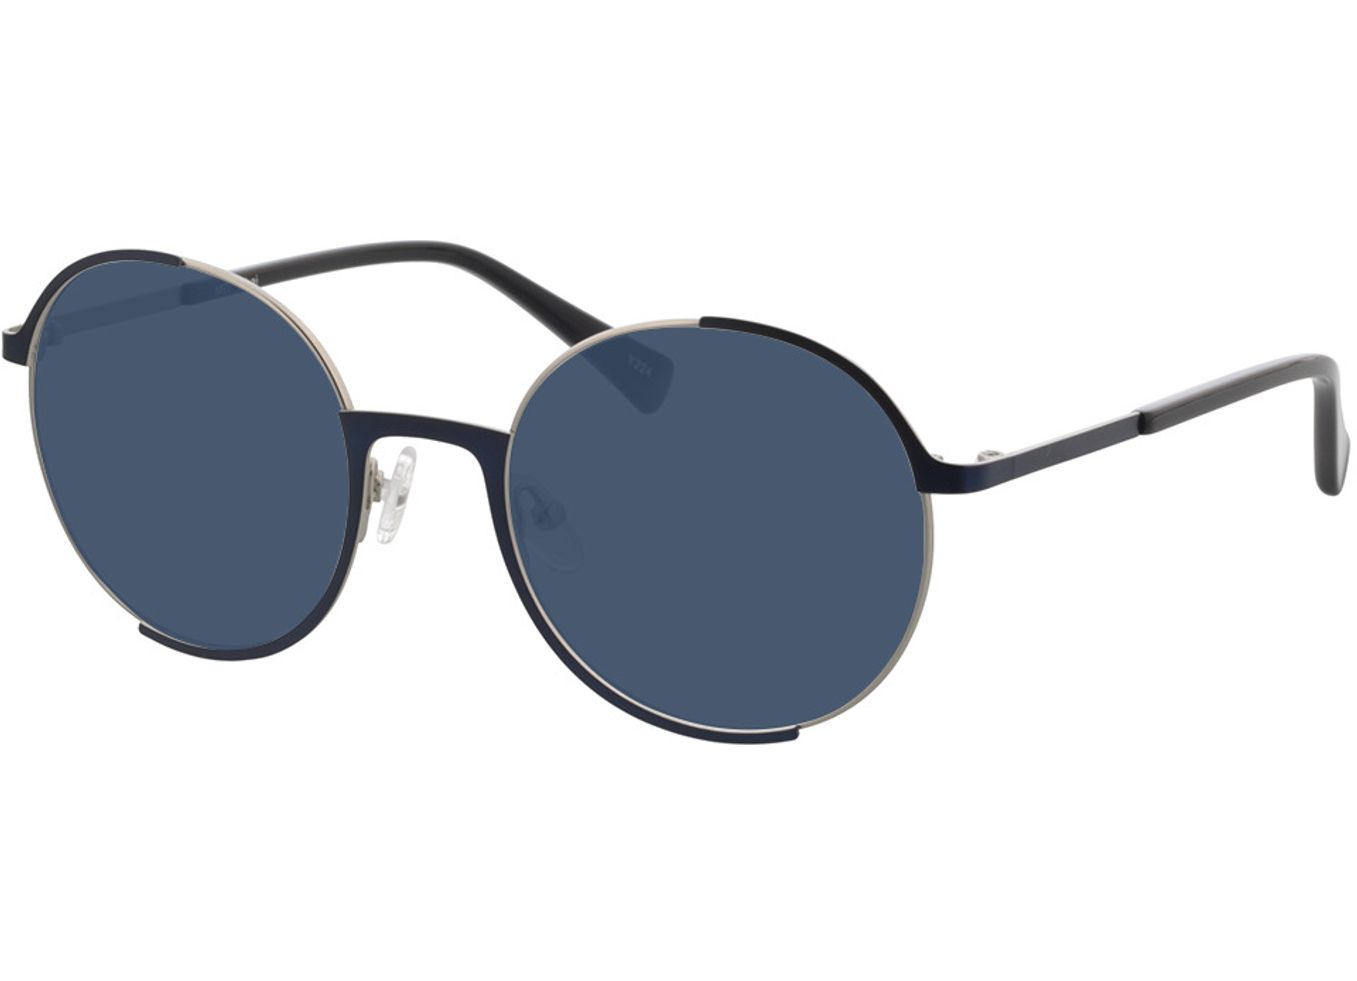 Ohai - blau/silber Sonnenbrille mit Sehstärke, Vollrand, Rund von Brille24 Collection